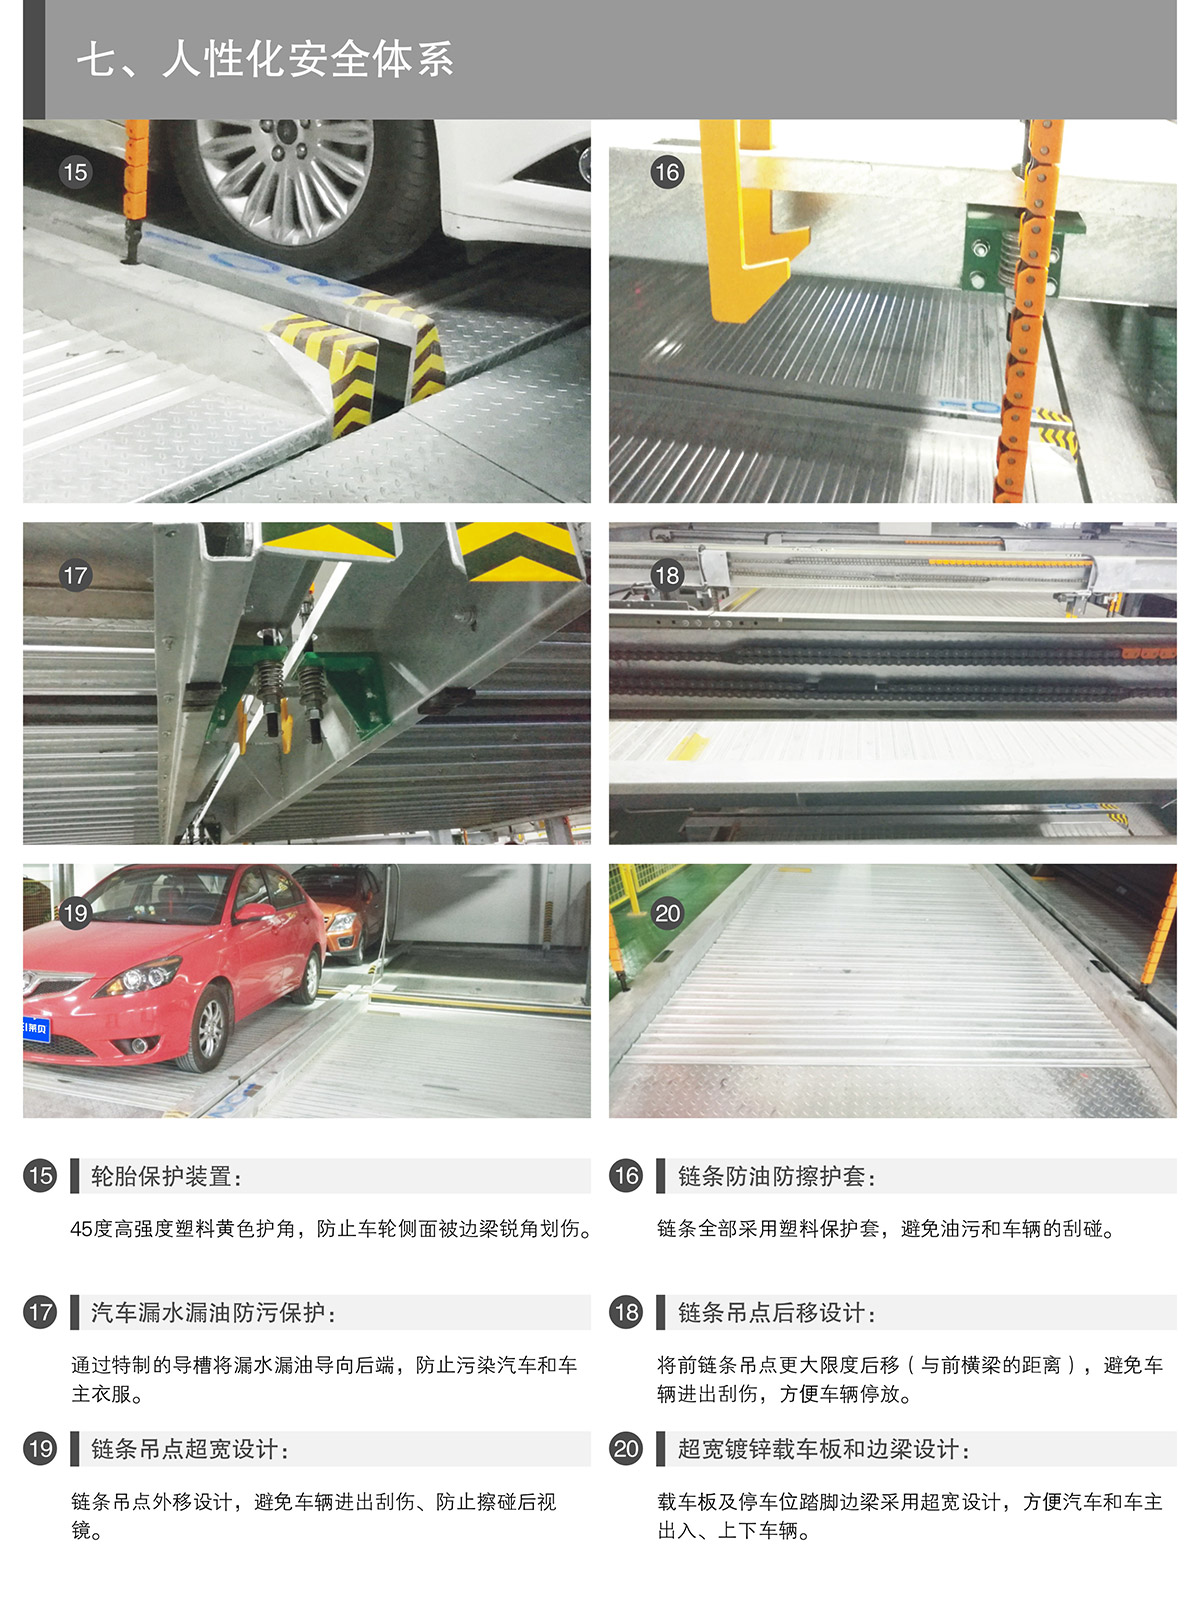 贵州PSH3-D1负一正二地坑三层升降横移类机械式立体停车设备人性化安全体系.jpg